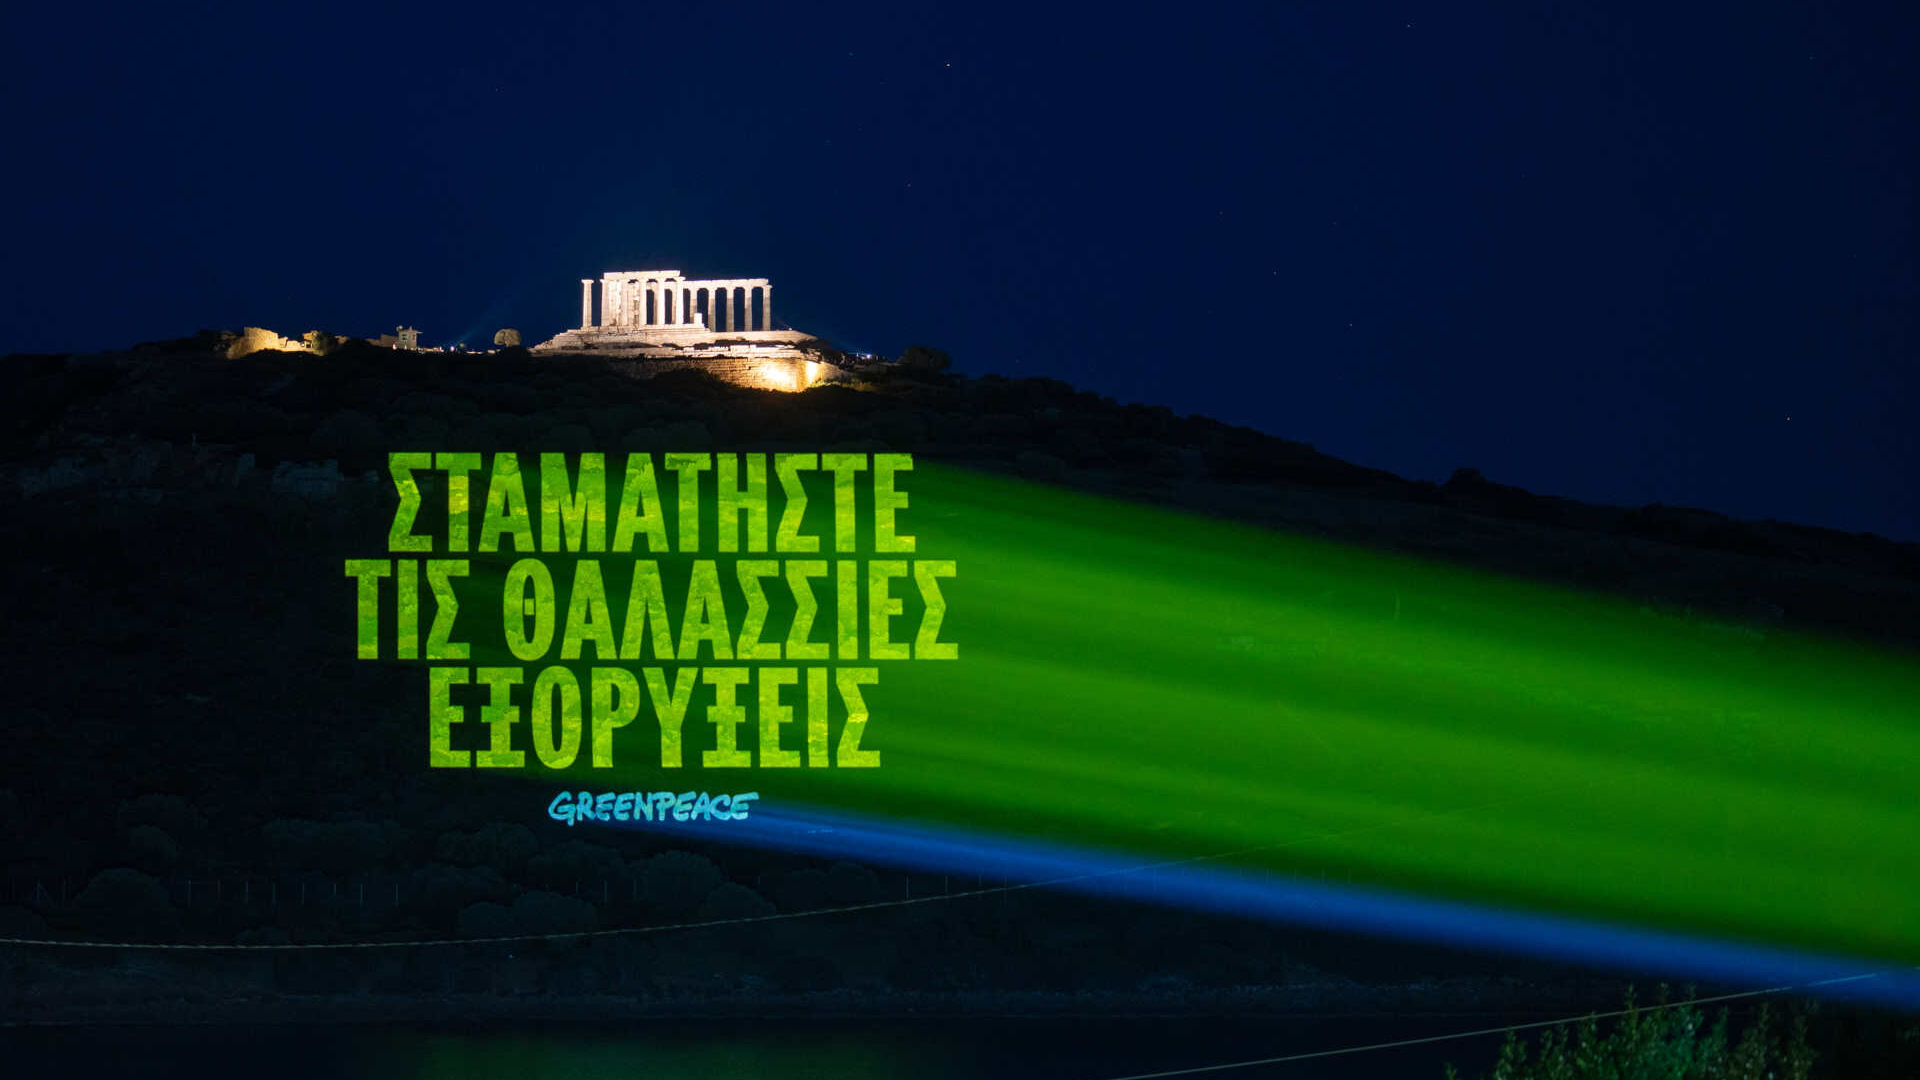 Греция: грек тилиндеги билдирүү